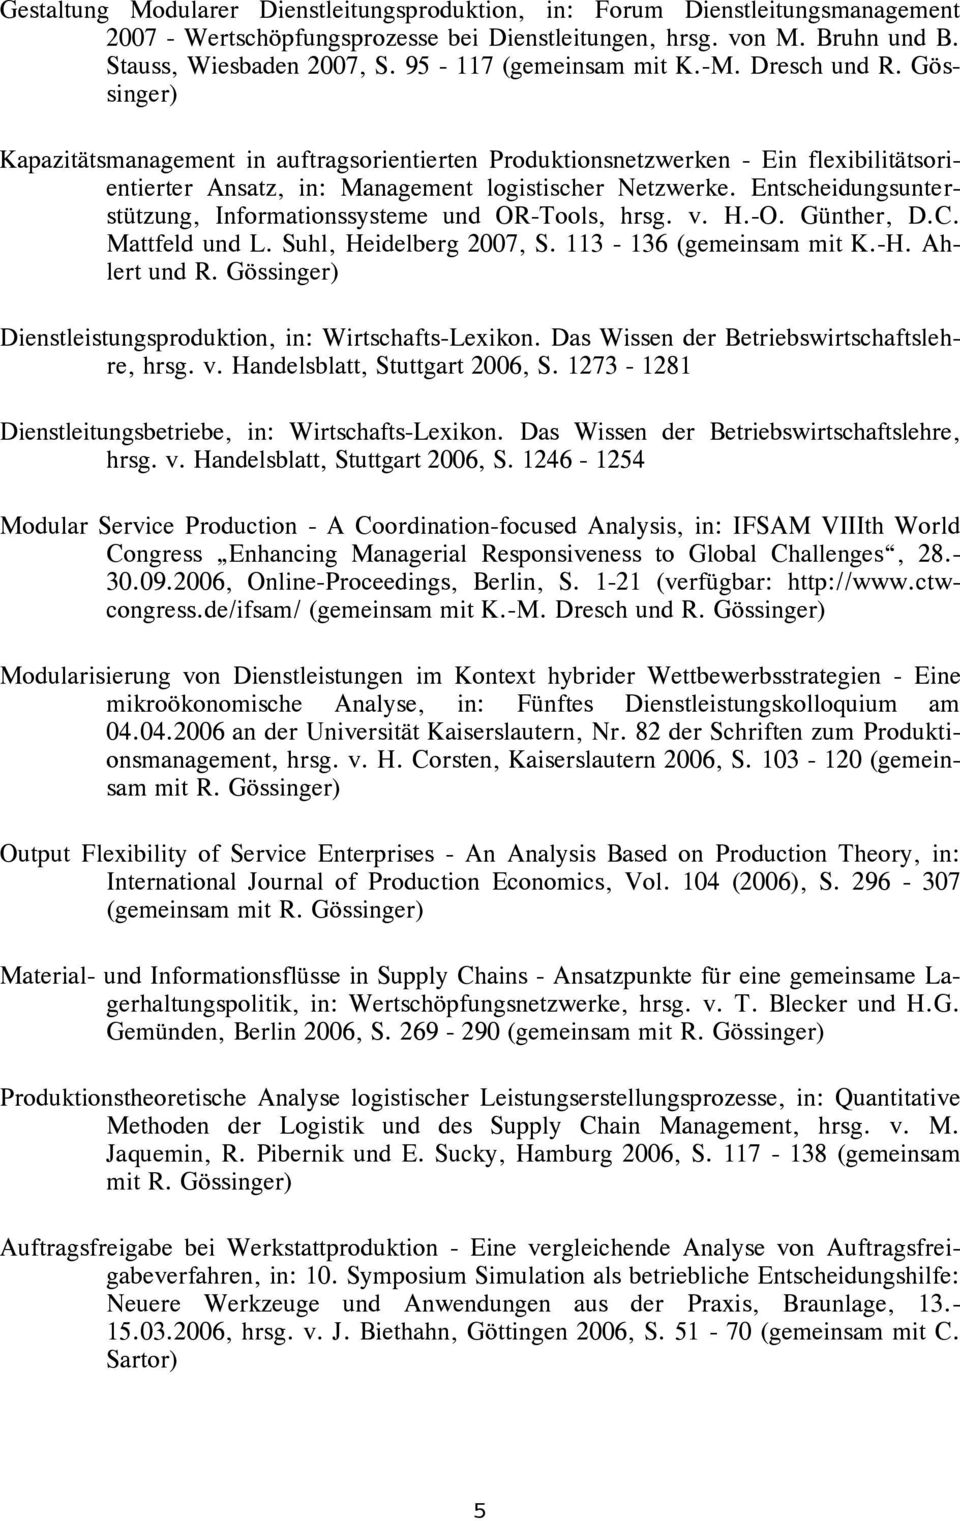 Entscheidungsunterstützung, Informationssysteme und OR-Tools, hrsg. v. H.-O. Günther, D.C. Mattfeld und L. Suhl, Heidelberg 2007, S. 113-136 (gemeinsam mit K.-H. Ahlert und R.